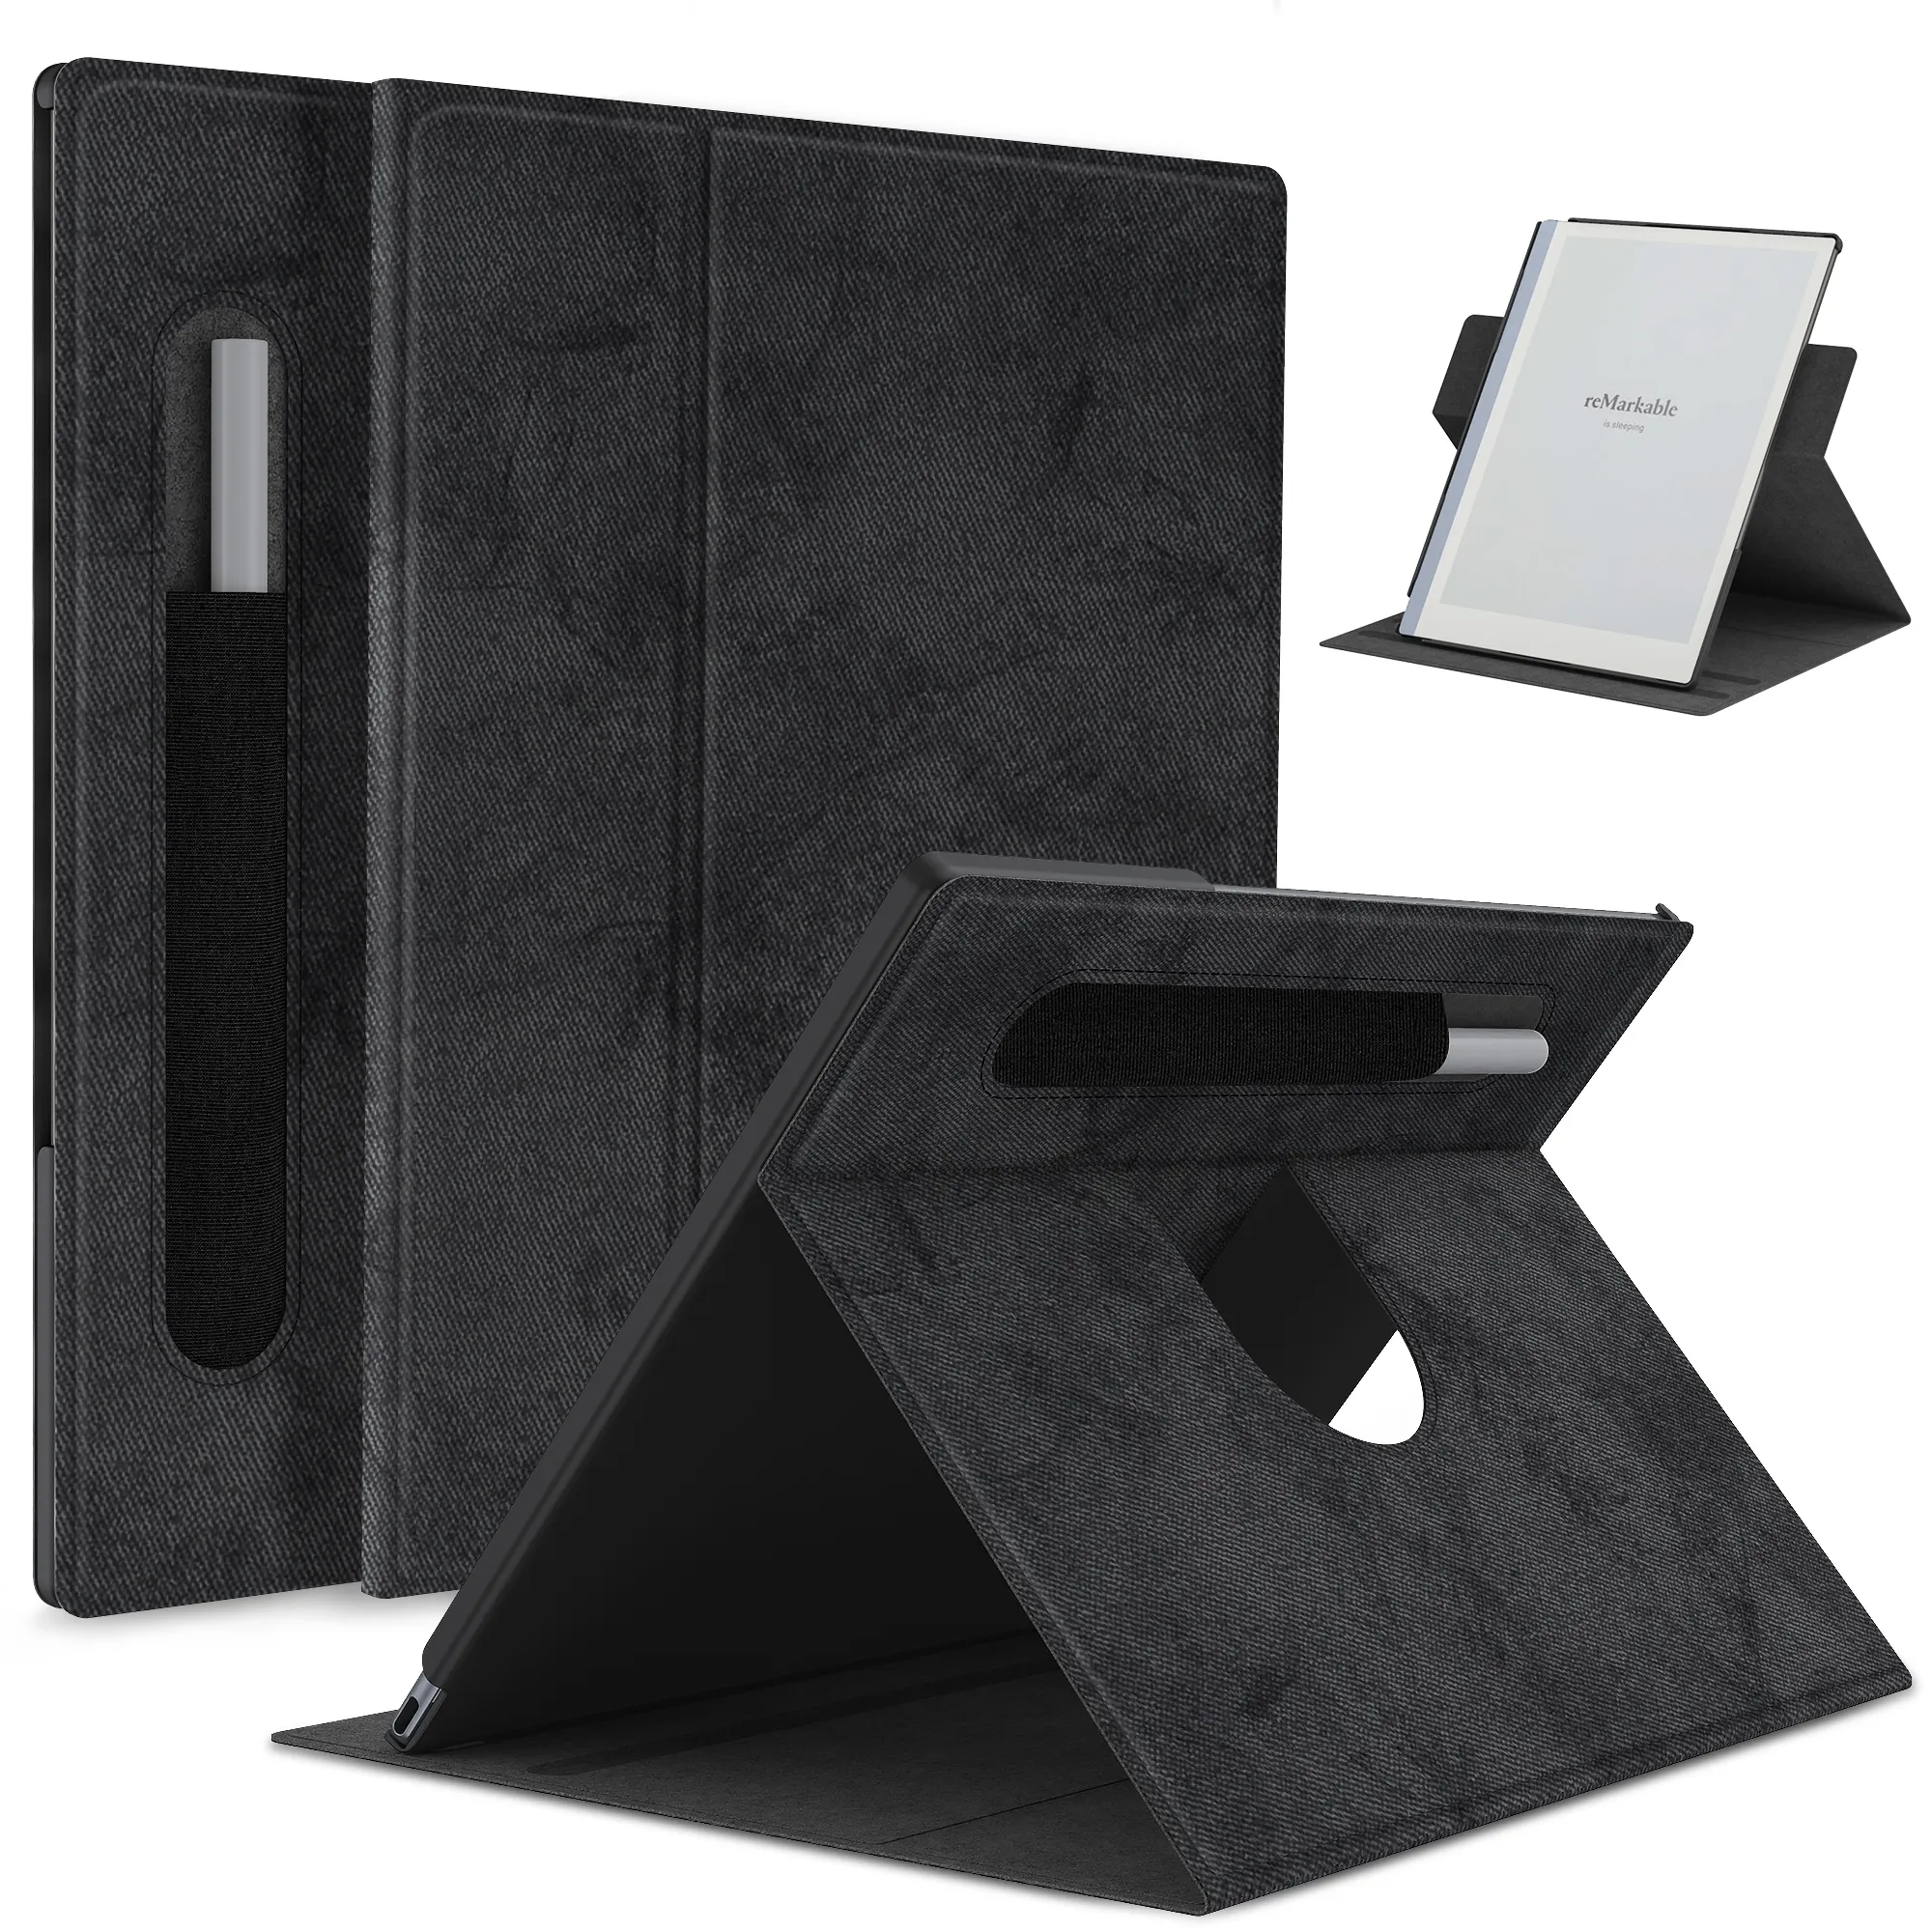 Sarung tablet lipat folio buku tipis bisa disesuaikan net-case untuk Kertas Digital 2 10.3 inci luar biasa dengan tempat pensil